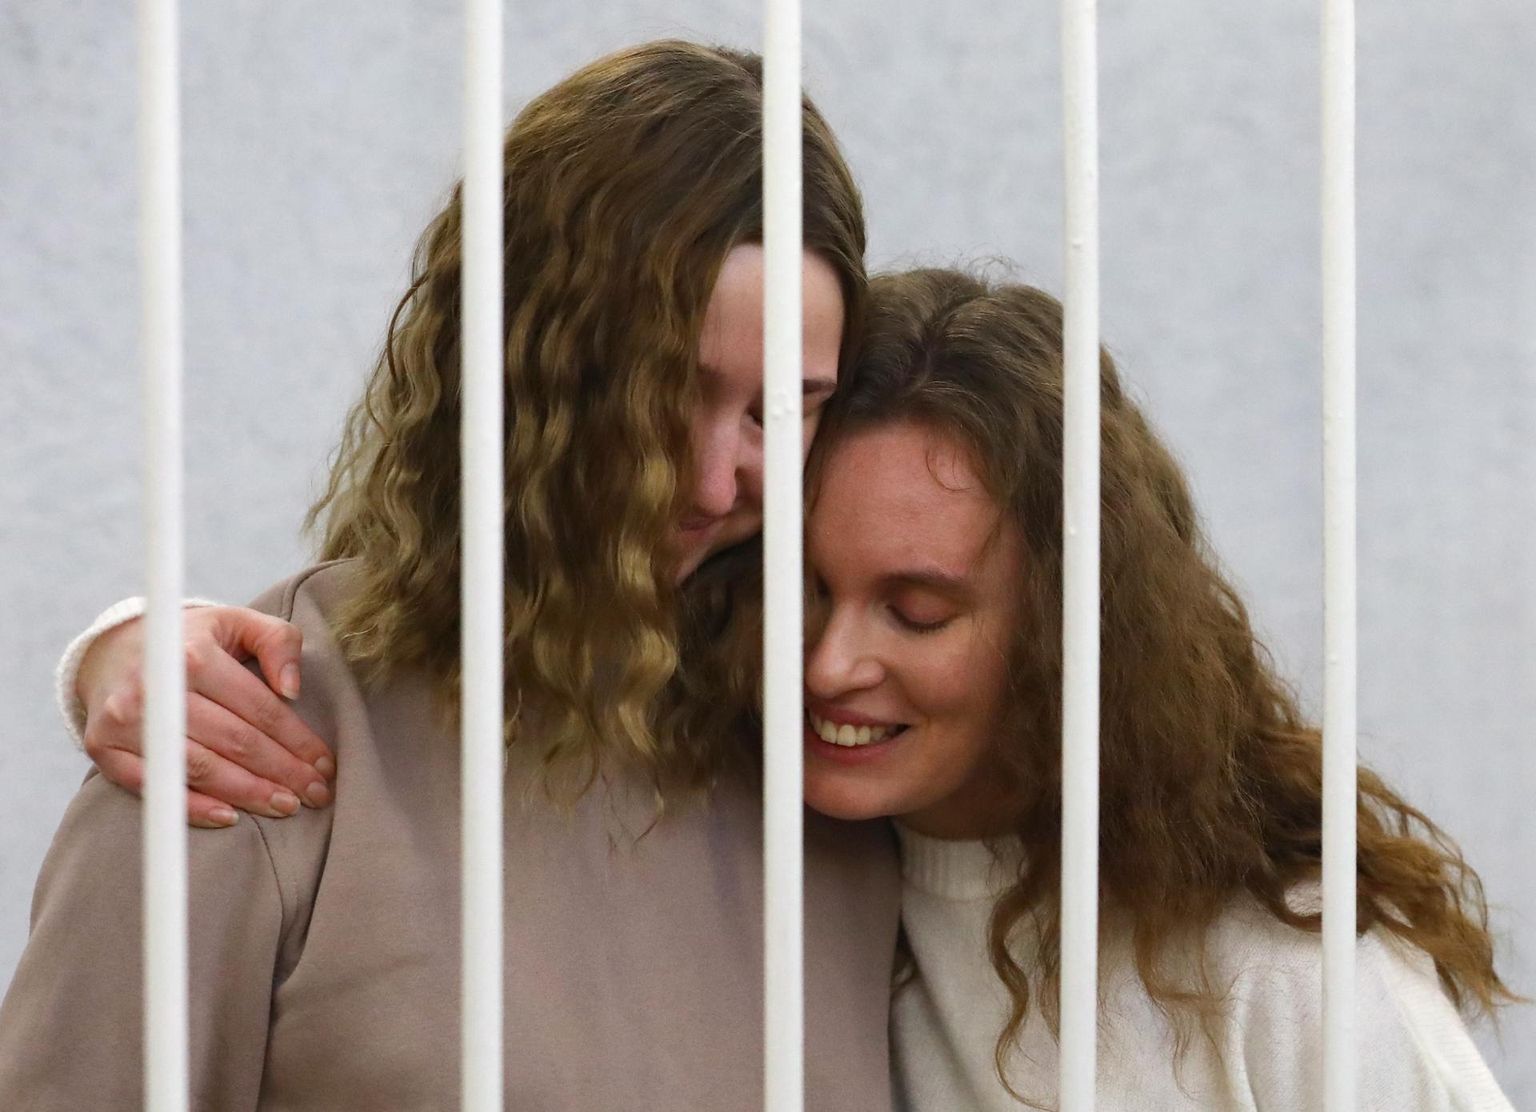 Ajakirjanikud Katsjarina Andrejeva ja Darja Tšultsova kohtu ees süüdistatuna protestiürituste korraldamises ja ettevalmistamises. Süüdimõistmise korral võib neid oodata kuni kolmeaastane vanglakaristus.